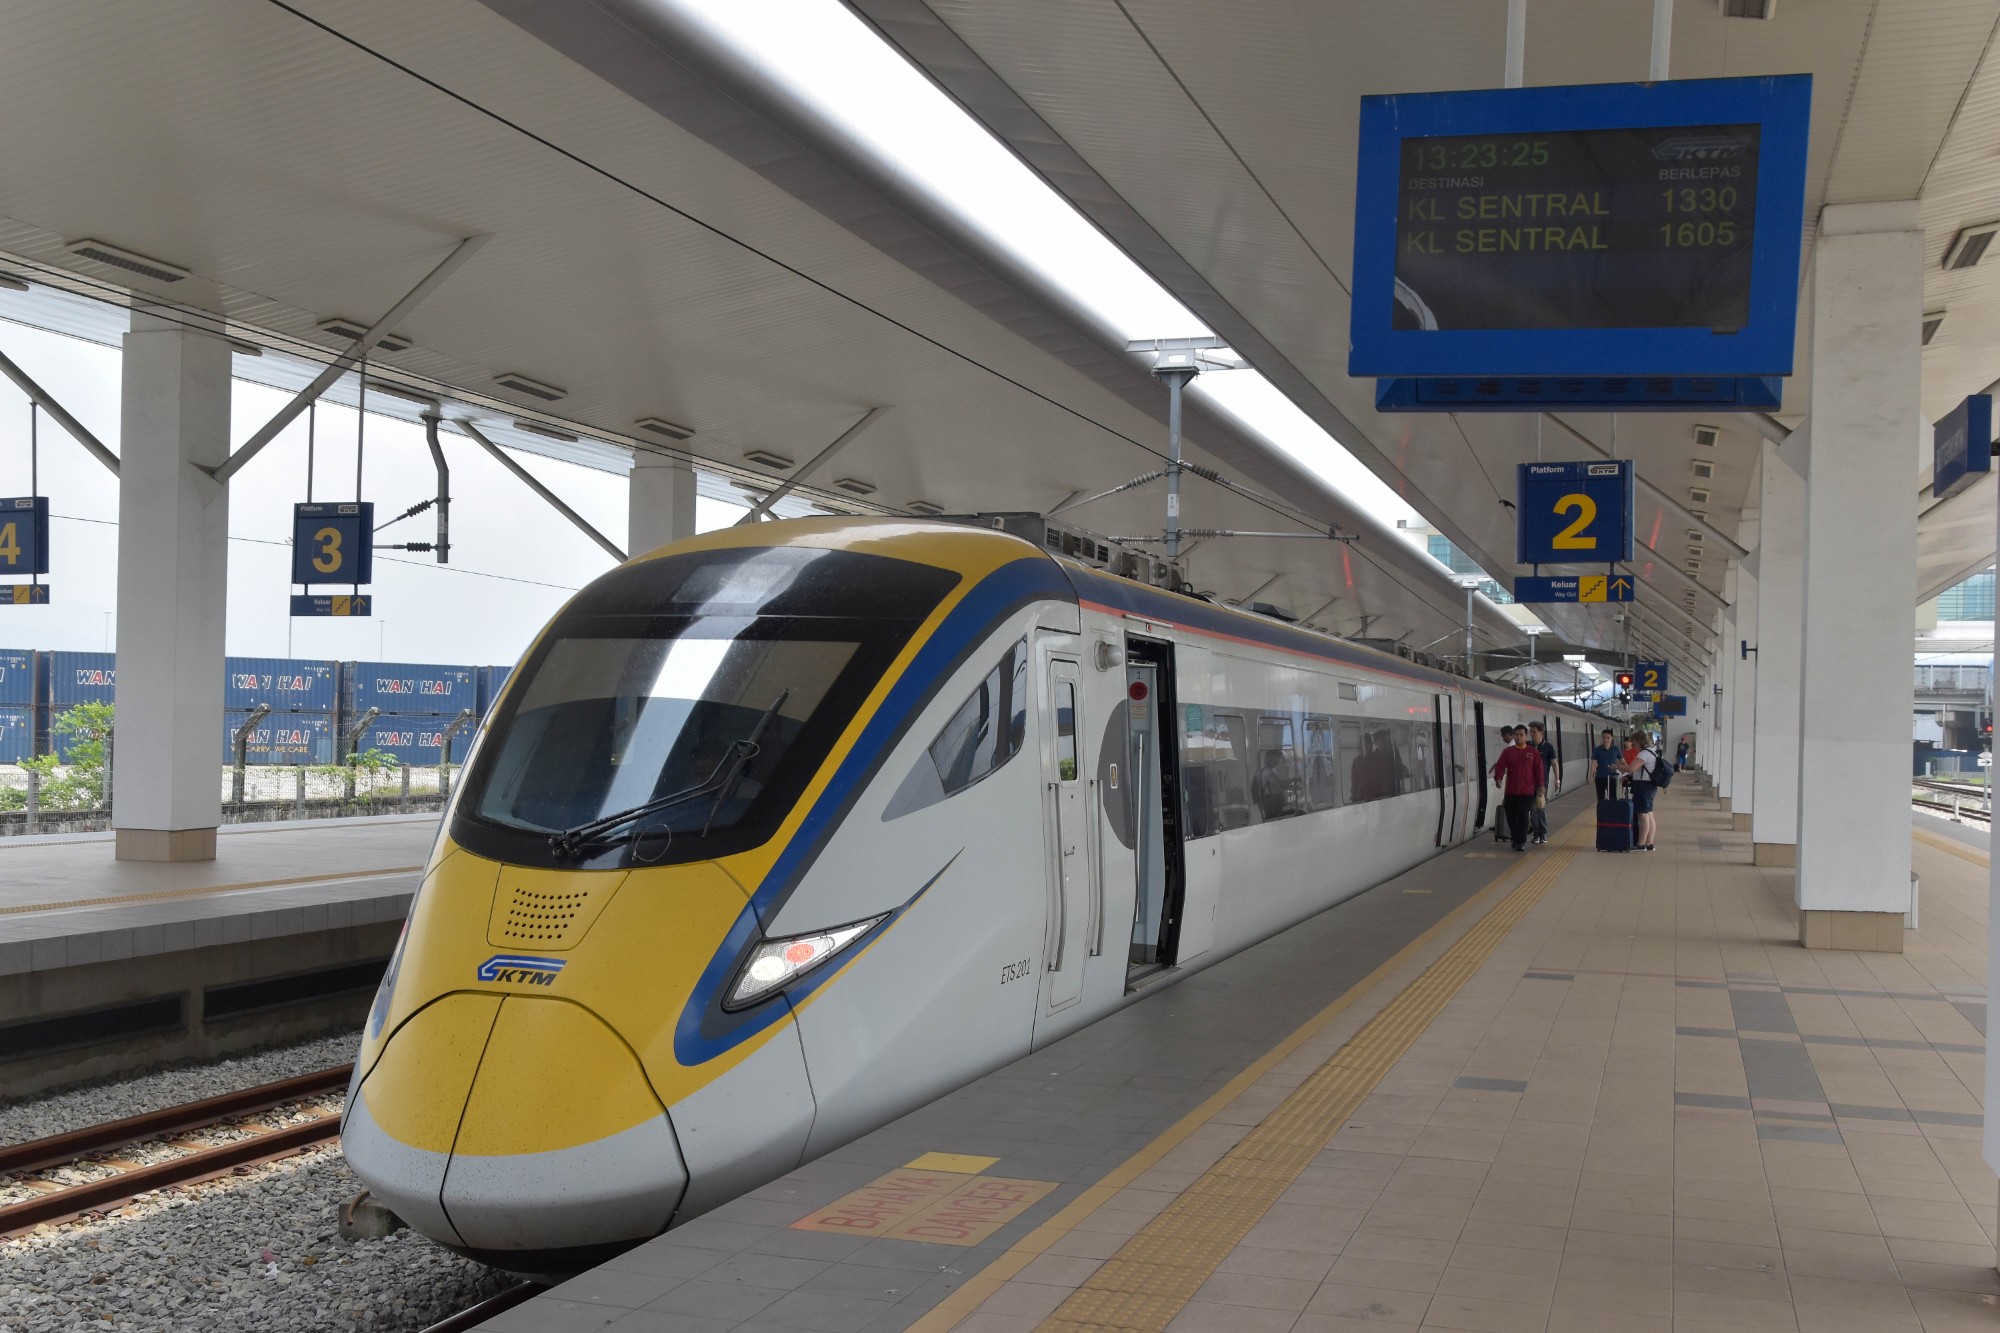  Bạn có thể lựa chọn đi tàu Electronic Train Service đến thành phố Penang